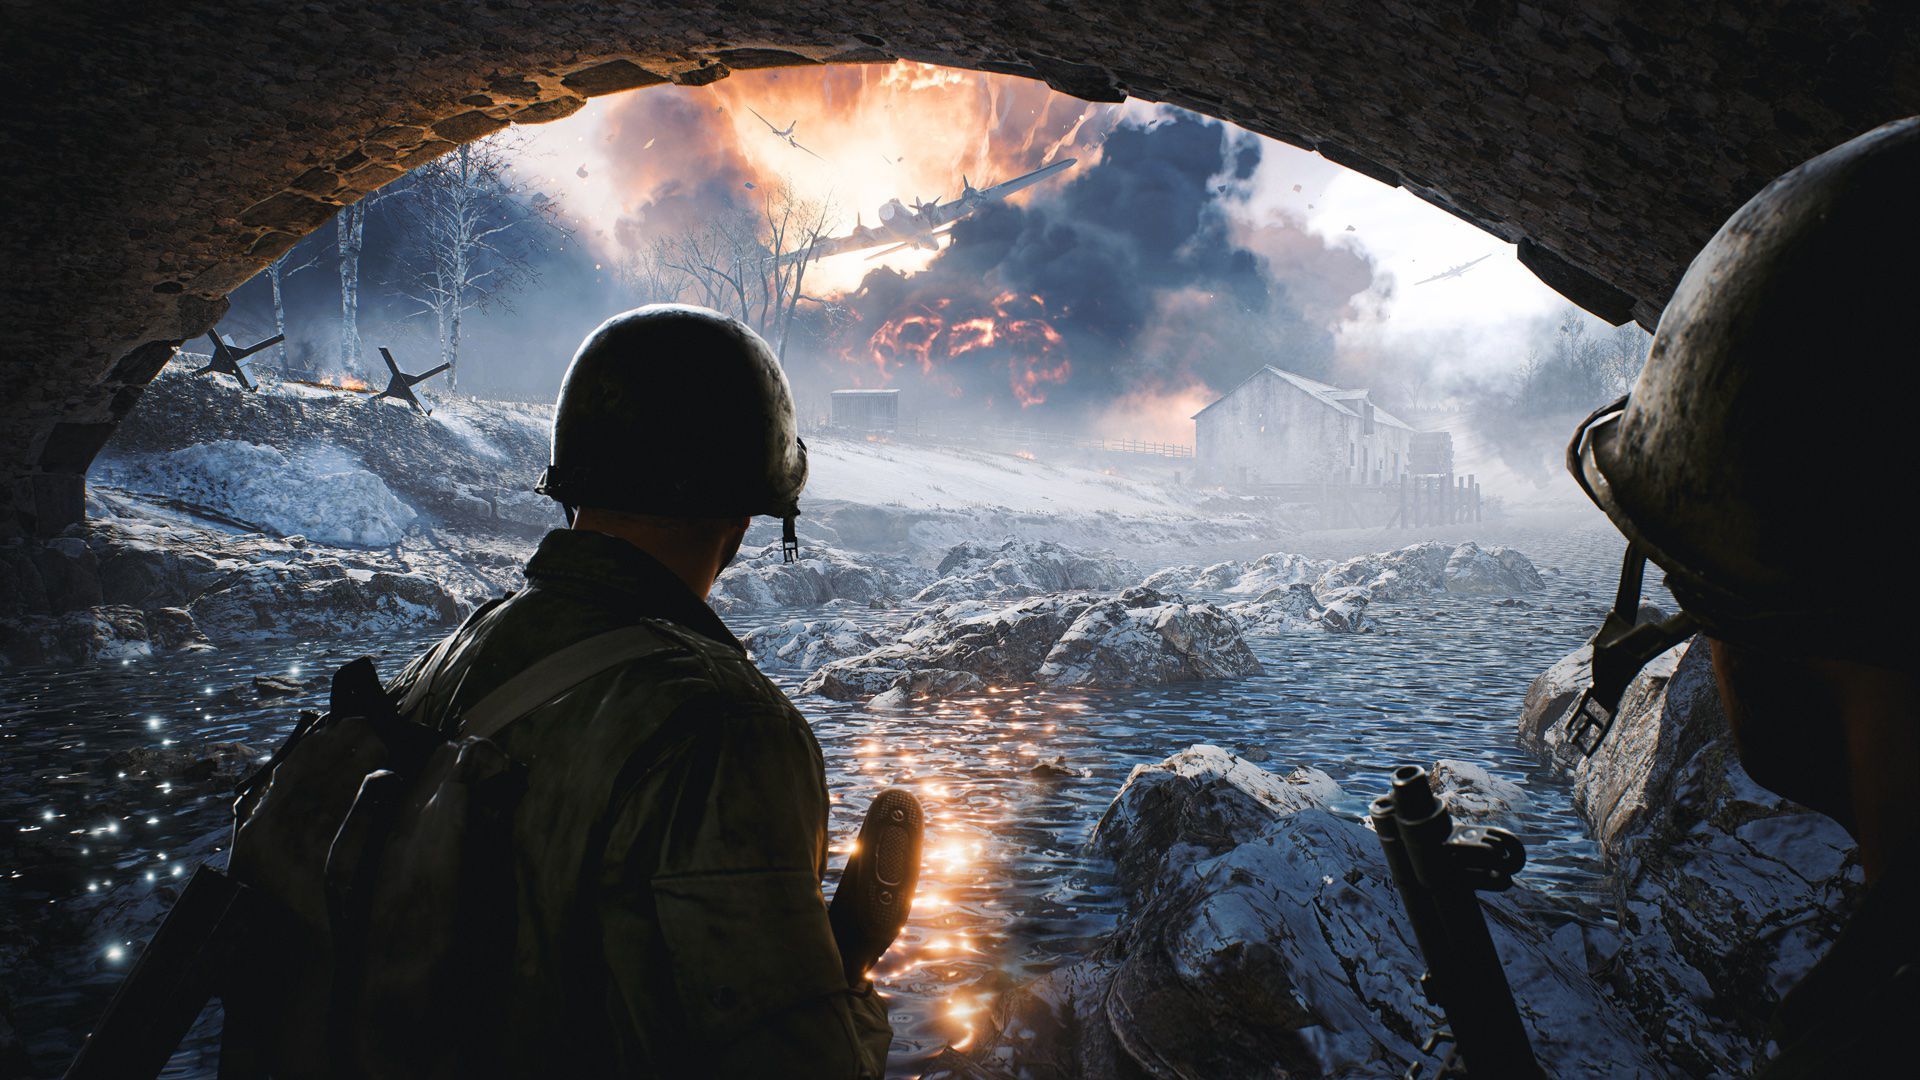 احتمال عرضه رایگان Battlefield 2042 به دنبال فروش ناامیدکننده